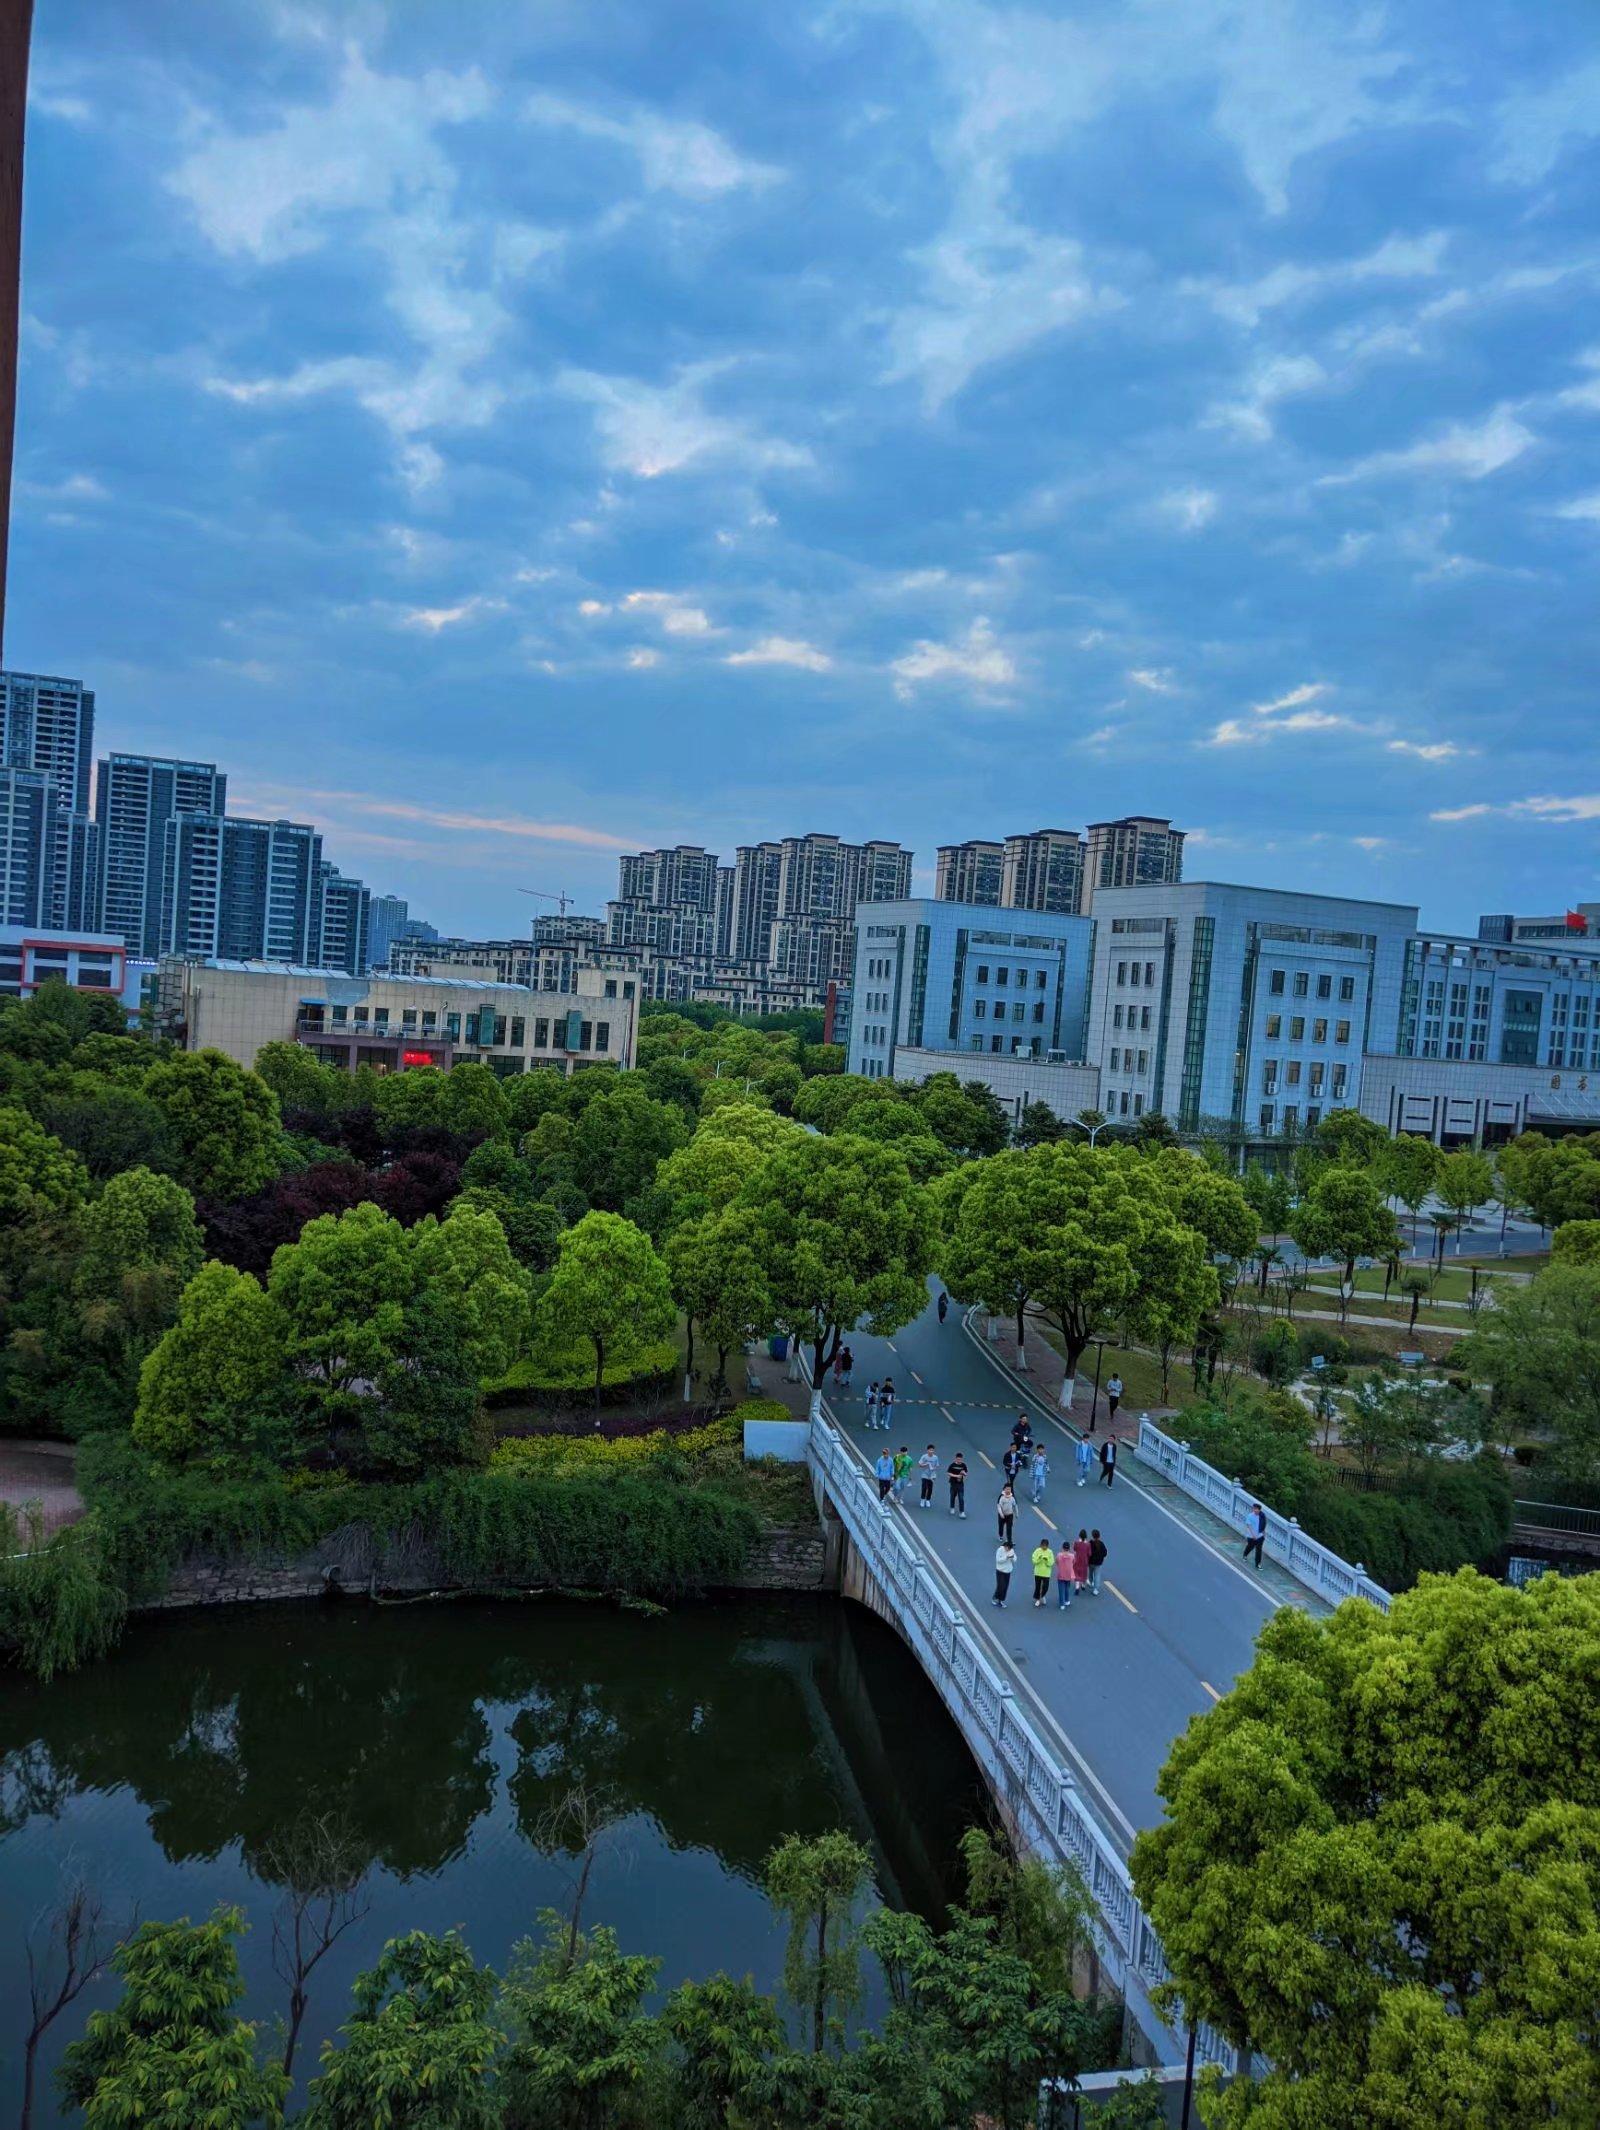 芜湖职业技术学院全景图片